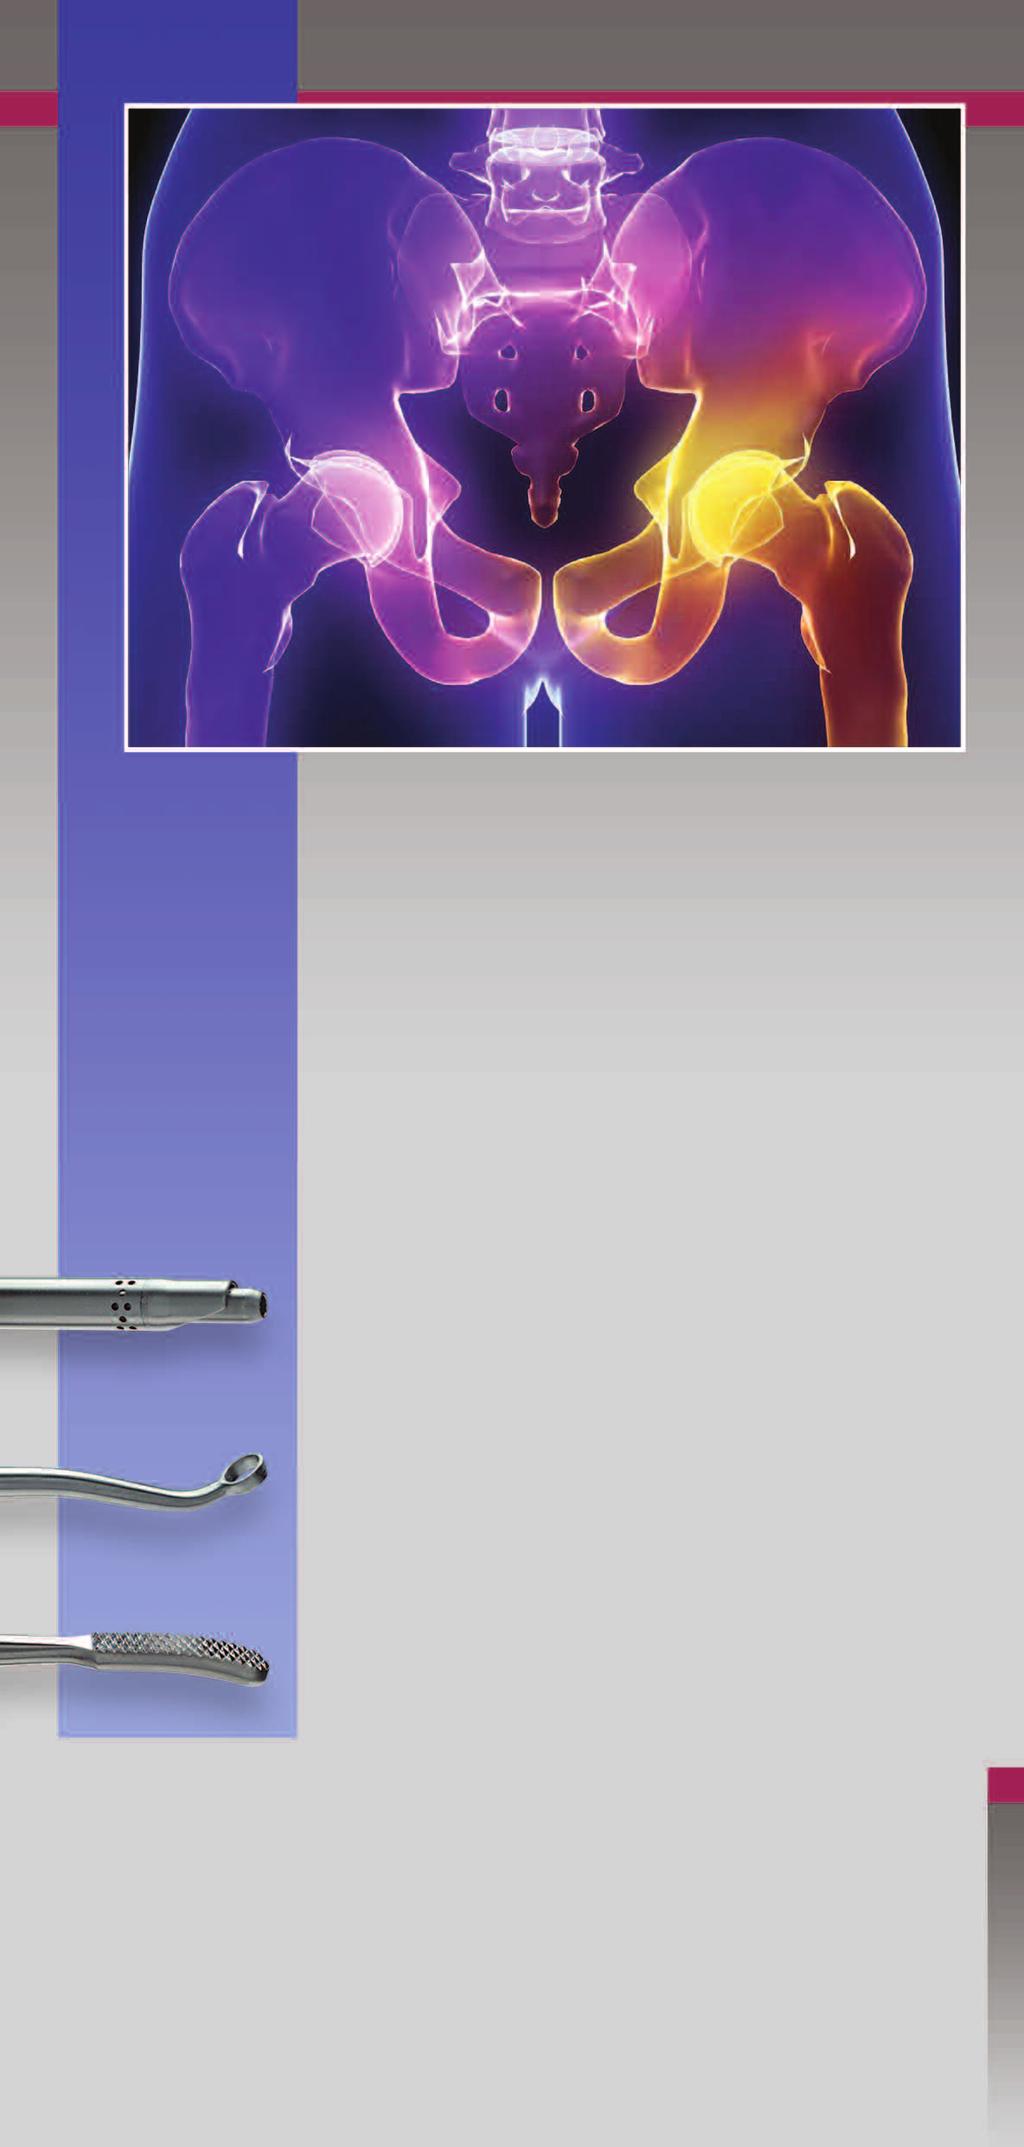 COXARTIS Neues Instrumentarium zur Hüftarthroskopie nach Miehlke COXARTIS ist ein speziell auf die Anatomie des Hüftgelenkes abgestimmtes Instrumentarium zur Hüftarthroskopie.